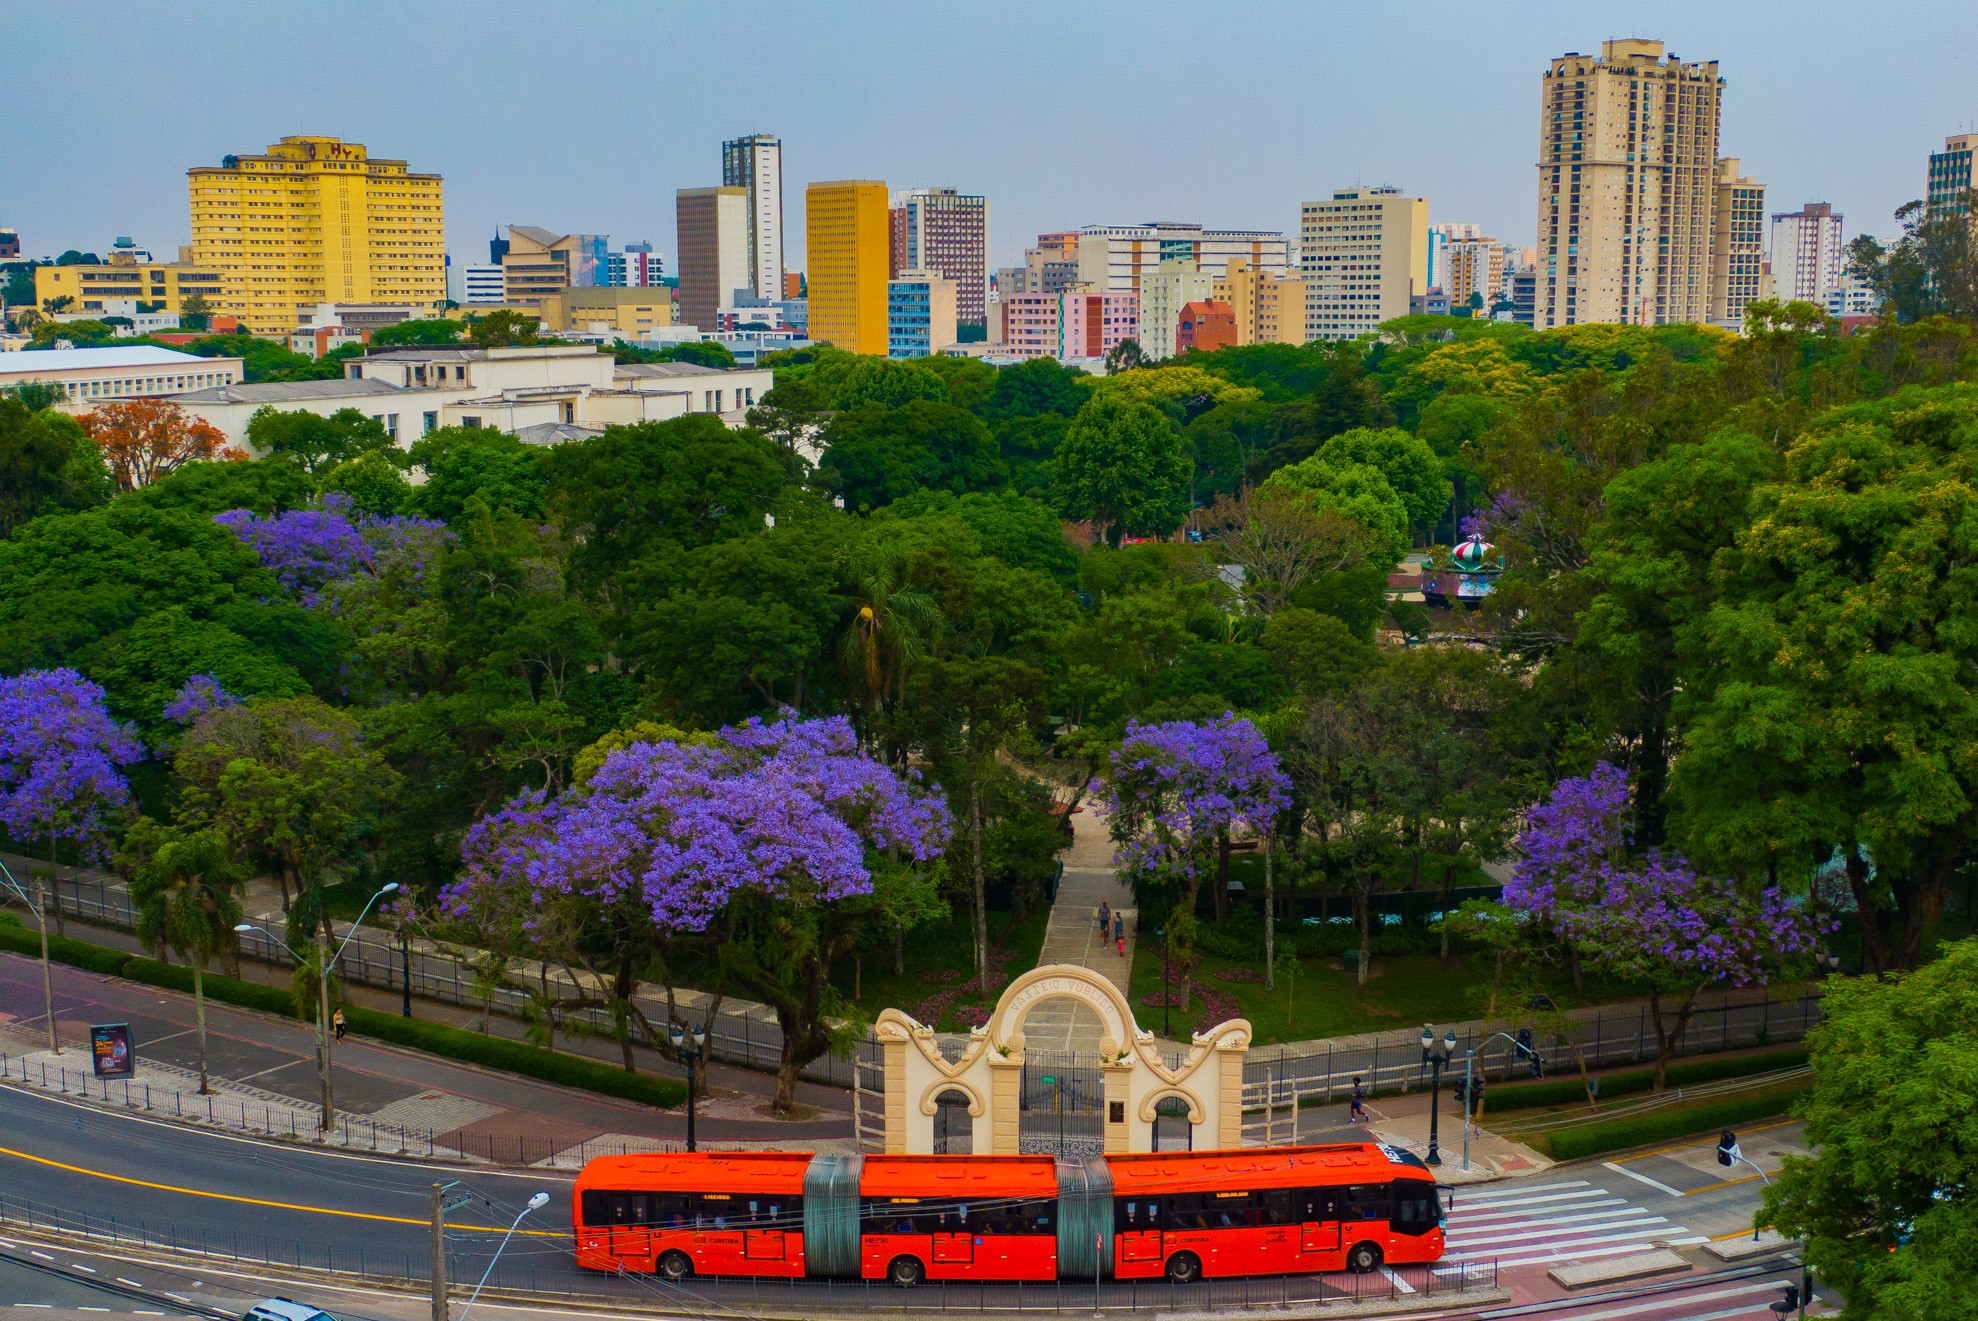 Quantos parques de Curitiba você consegue reconhecer? Jogue o quiz e descubra